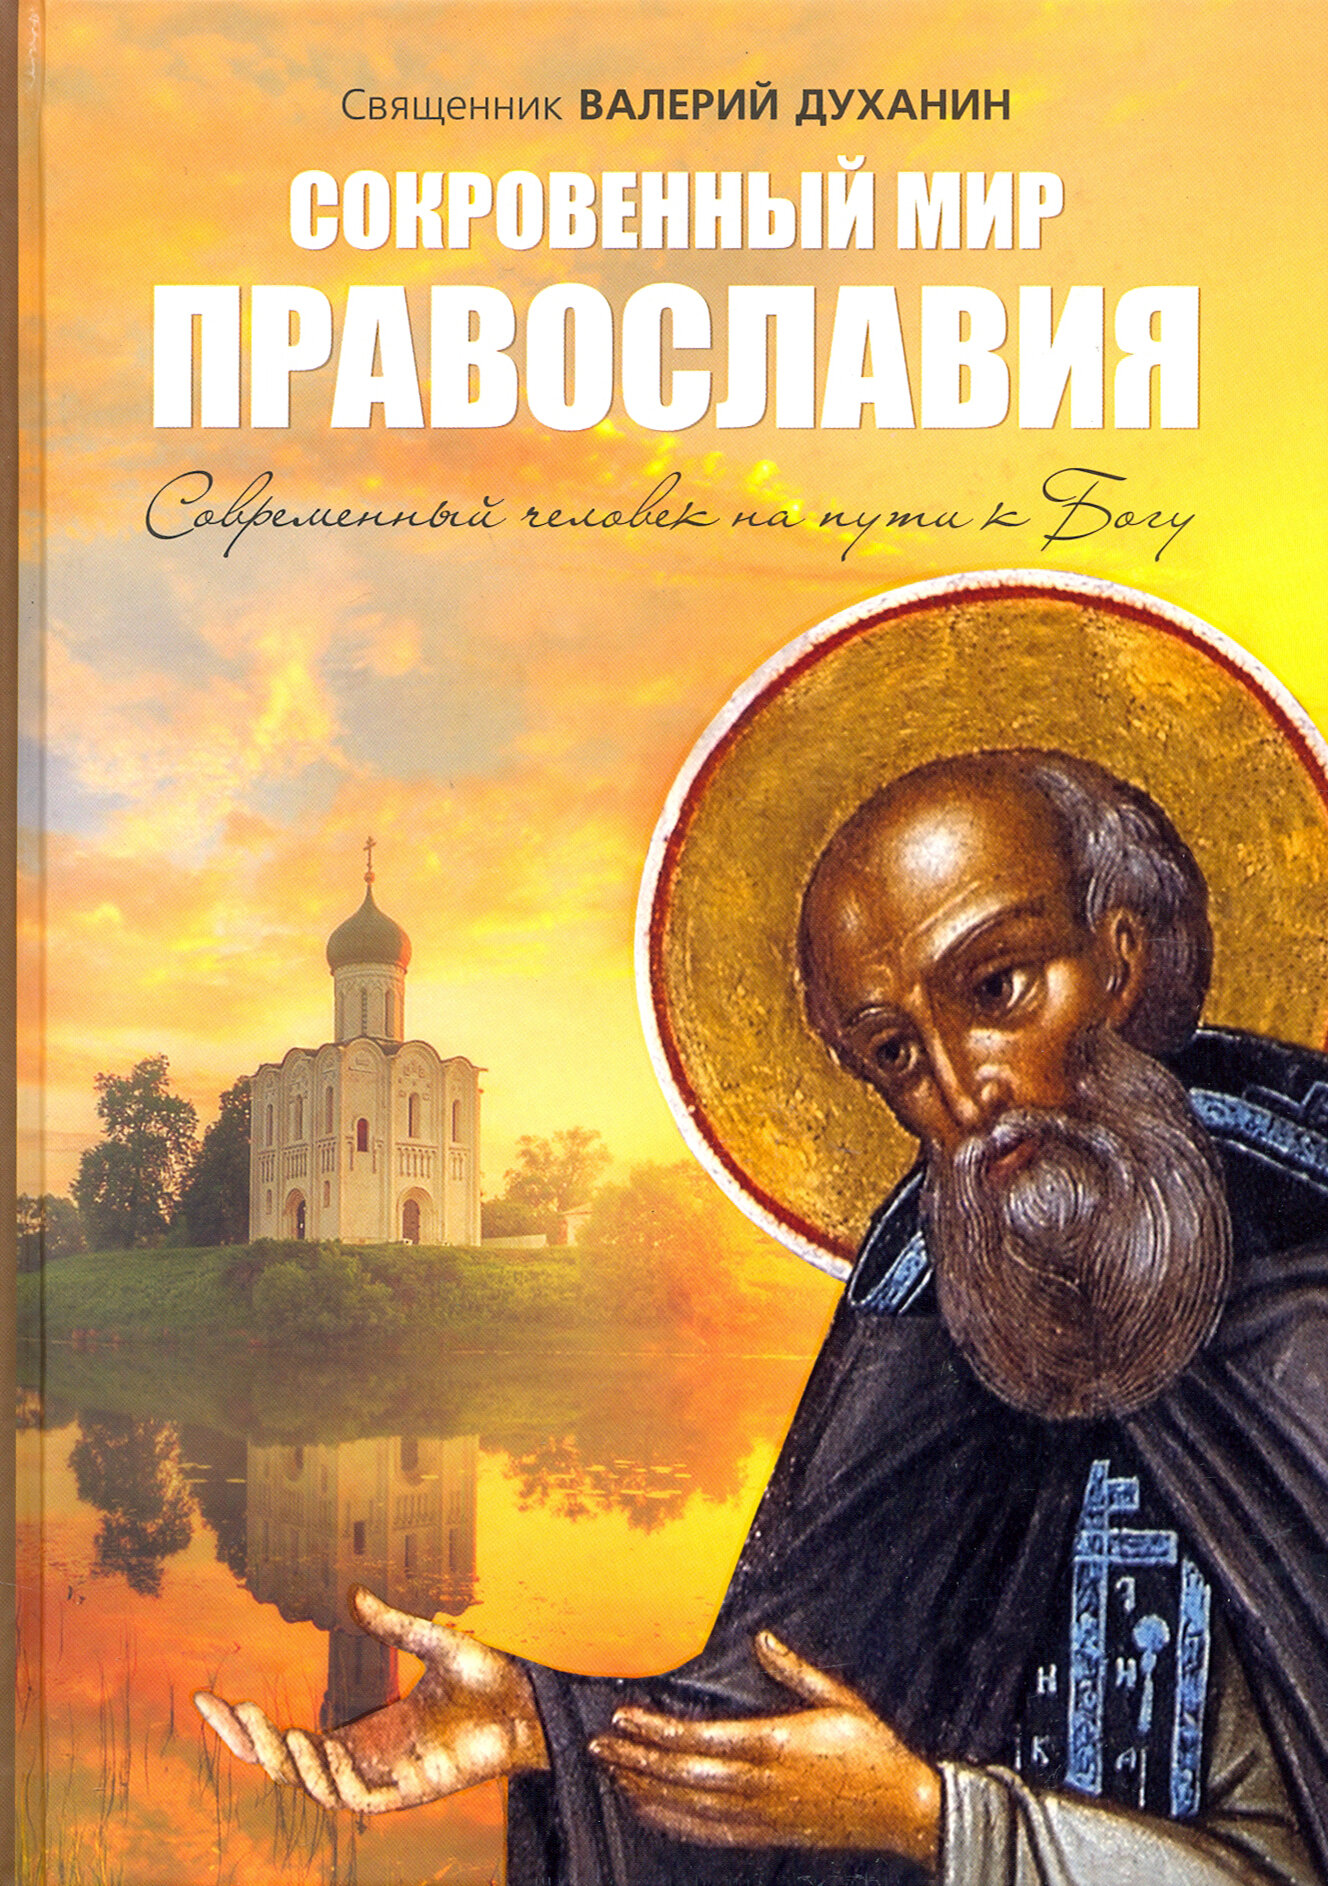 Сокровенный мир Православия (священник Духанин Валерий Николаевич) - фото №9